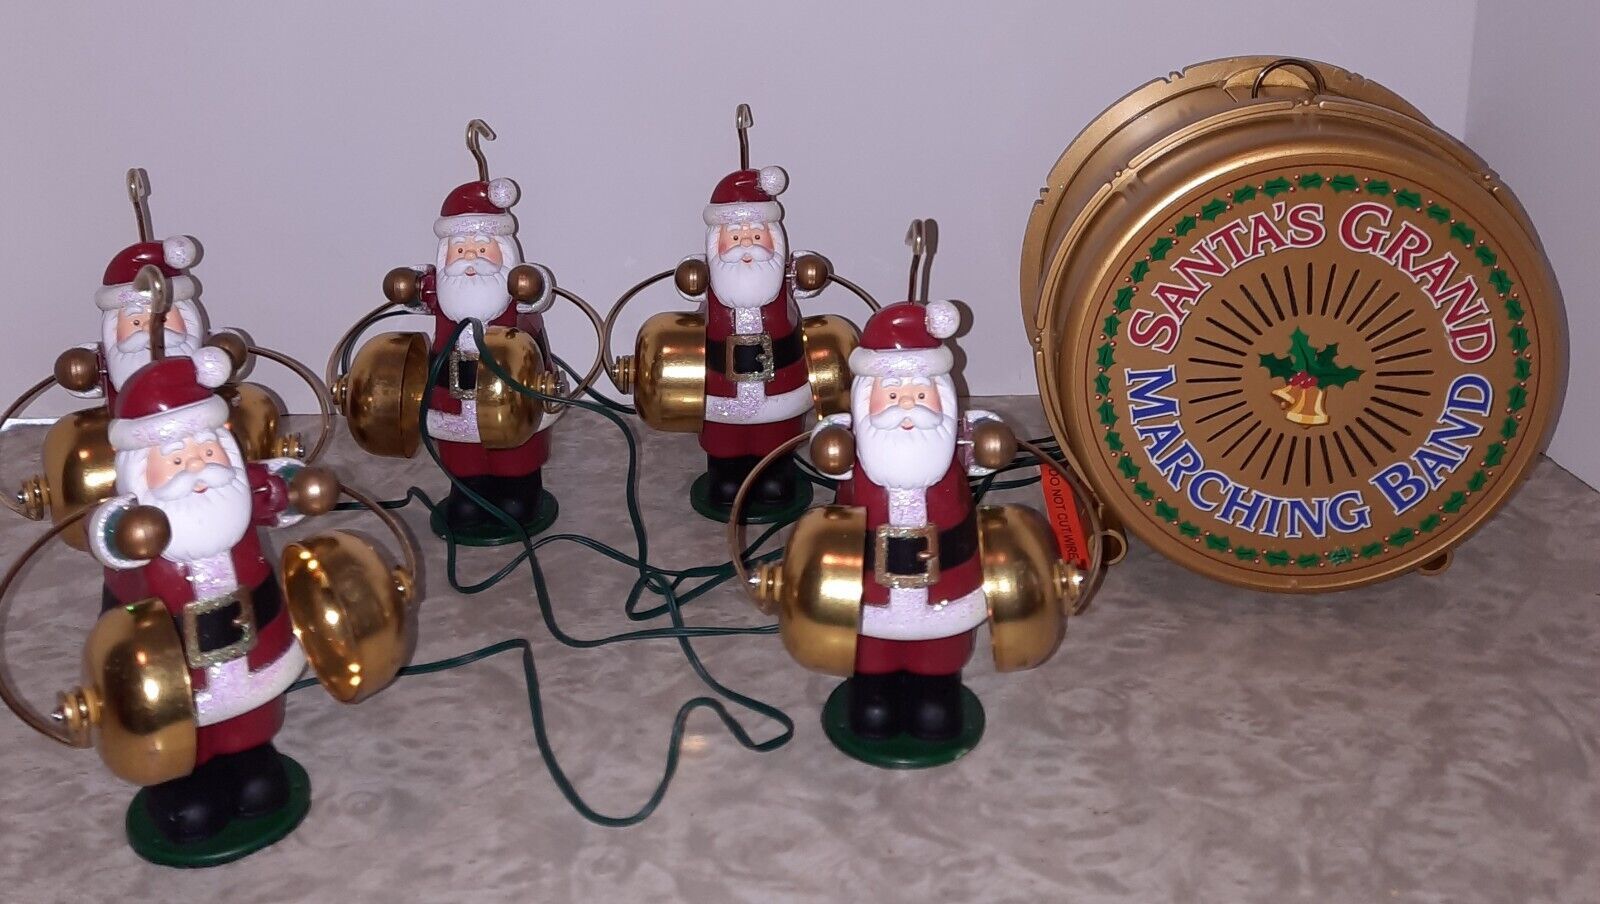 Mr Christmas Five Santas Grand Marching Band Carols Bells - $89.09